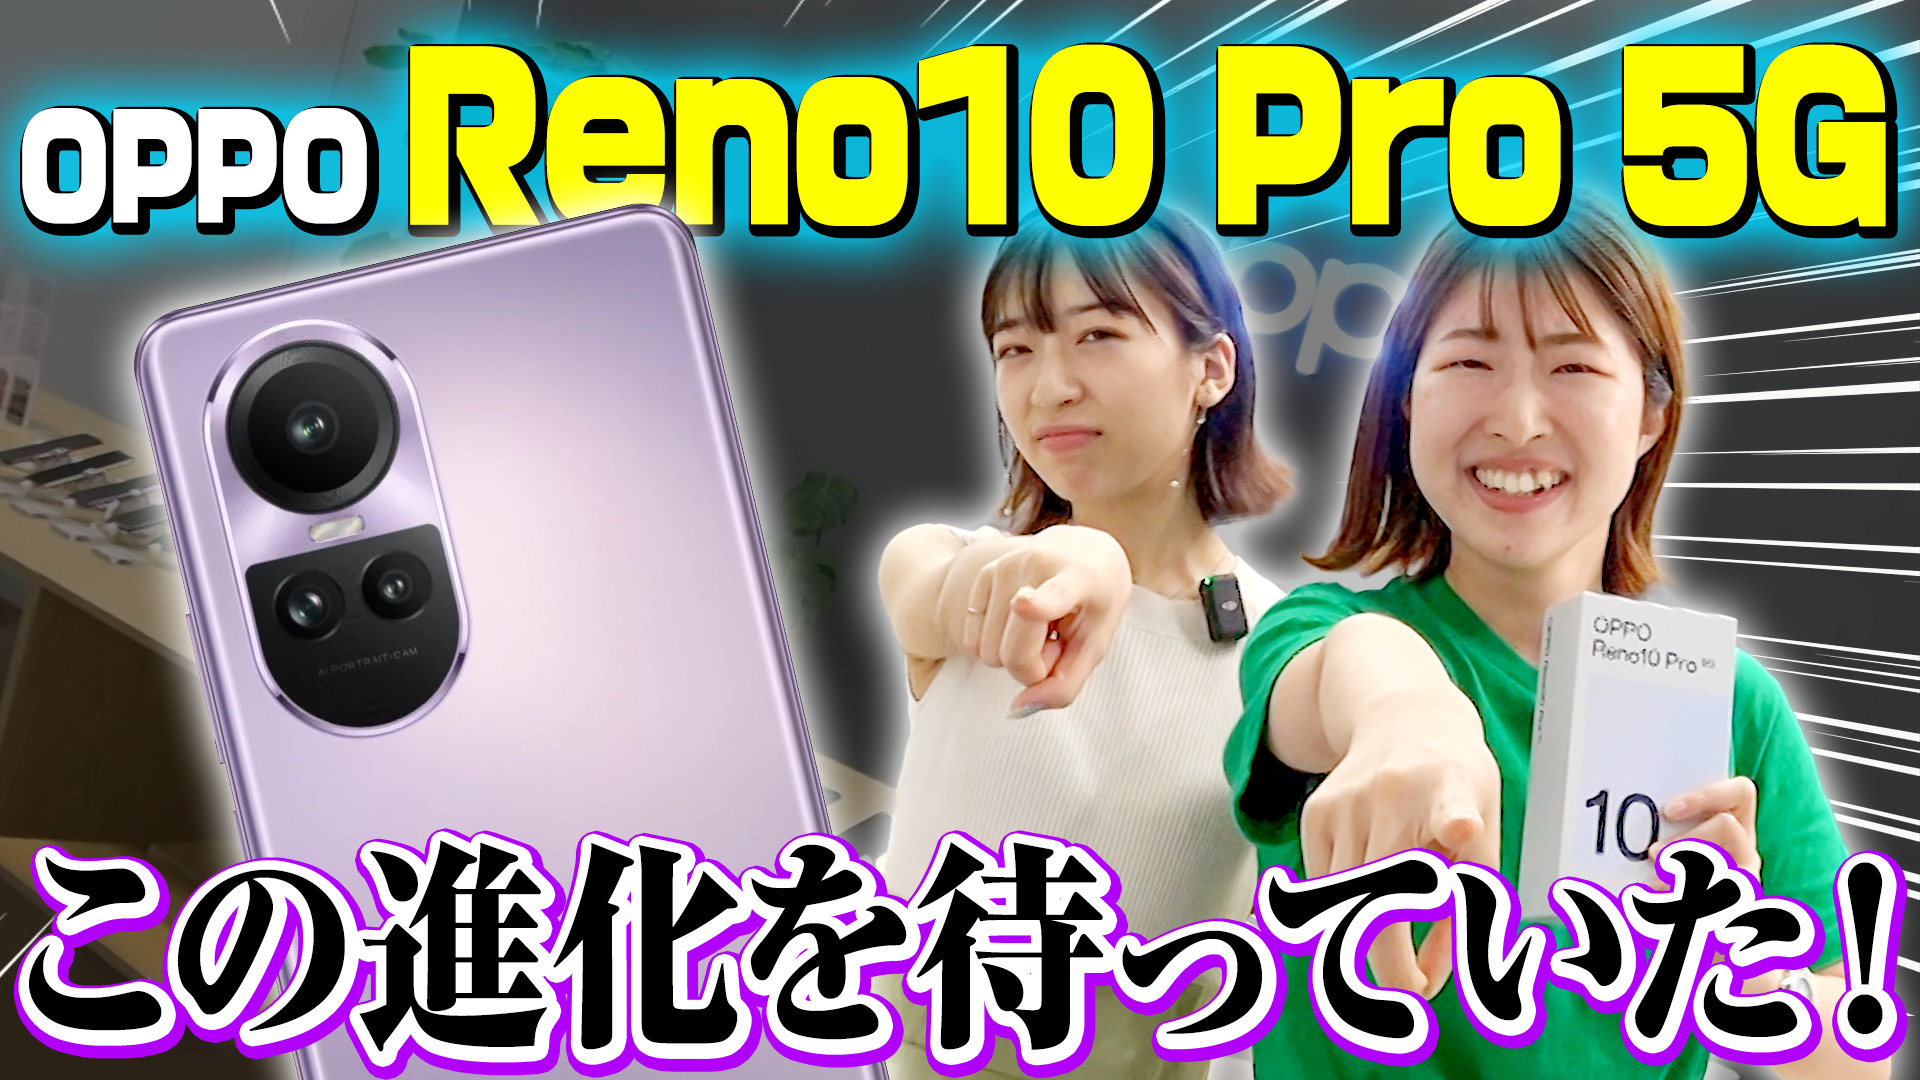 端末プレゼントあり】新機種『OPPO Reno10 Pro 5G』を最速レビュー